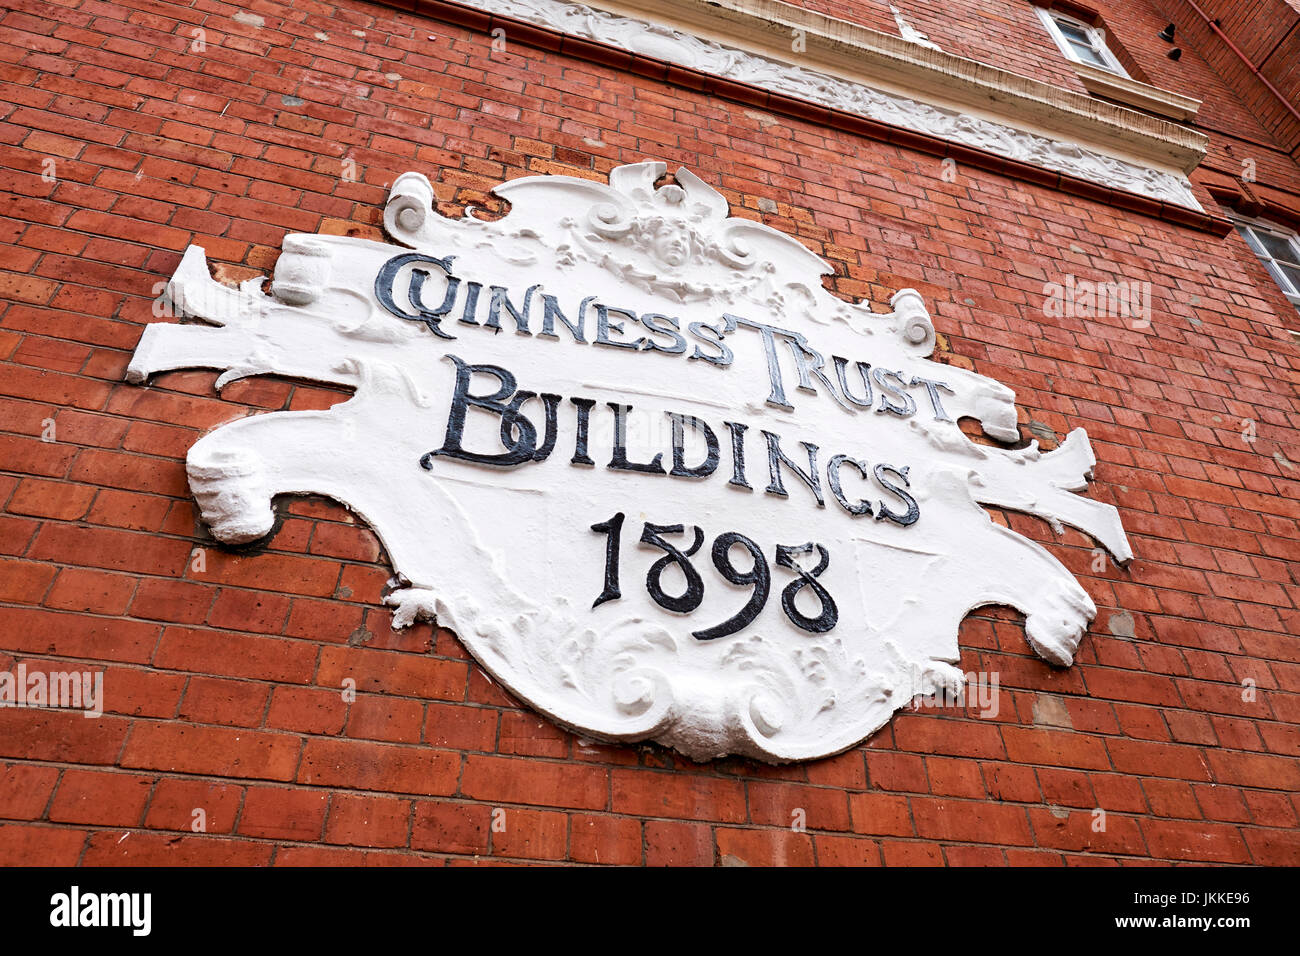 Guinness edifici di trust, Snowsfields, Southwark, Londra, Regno Unito Foto Stock